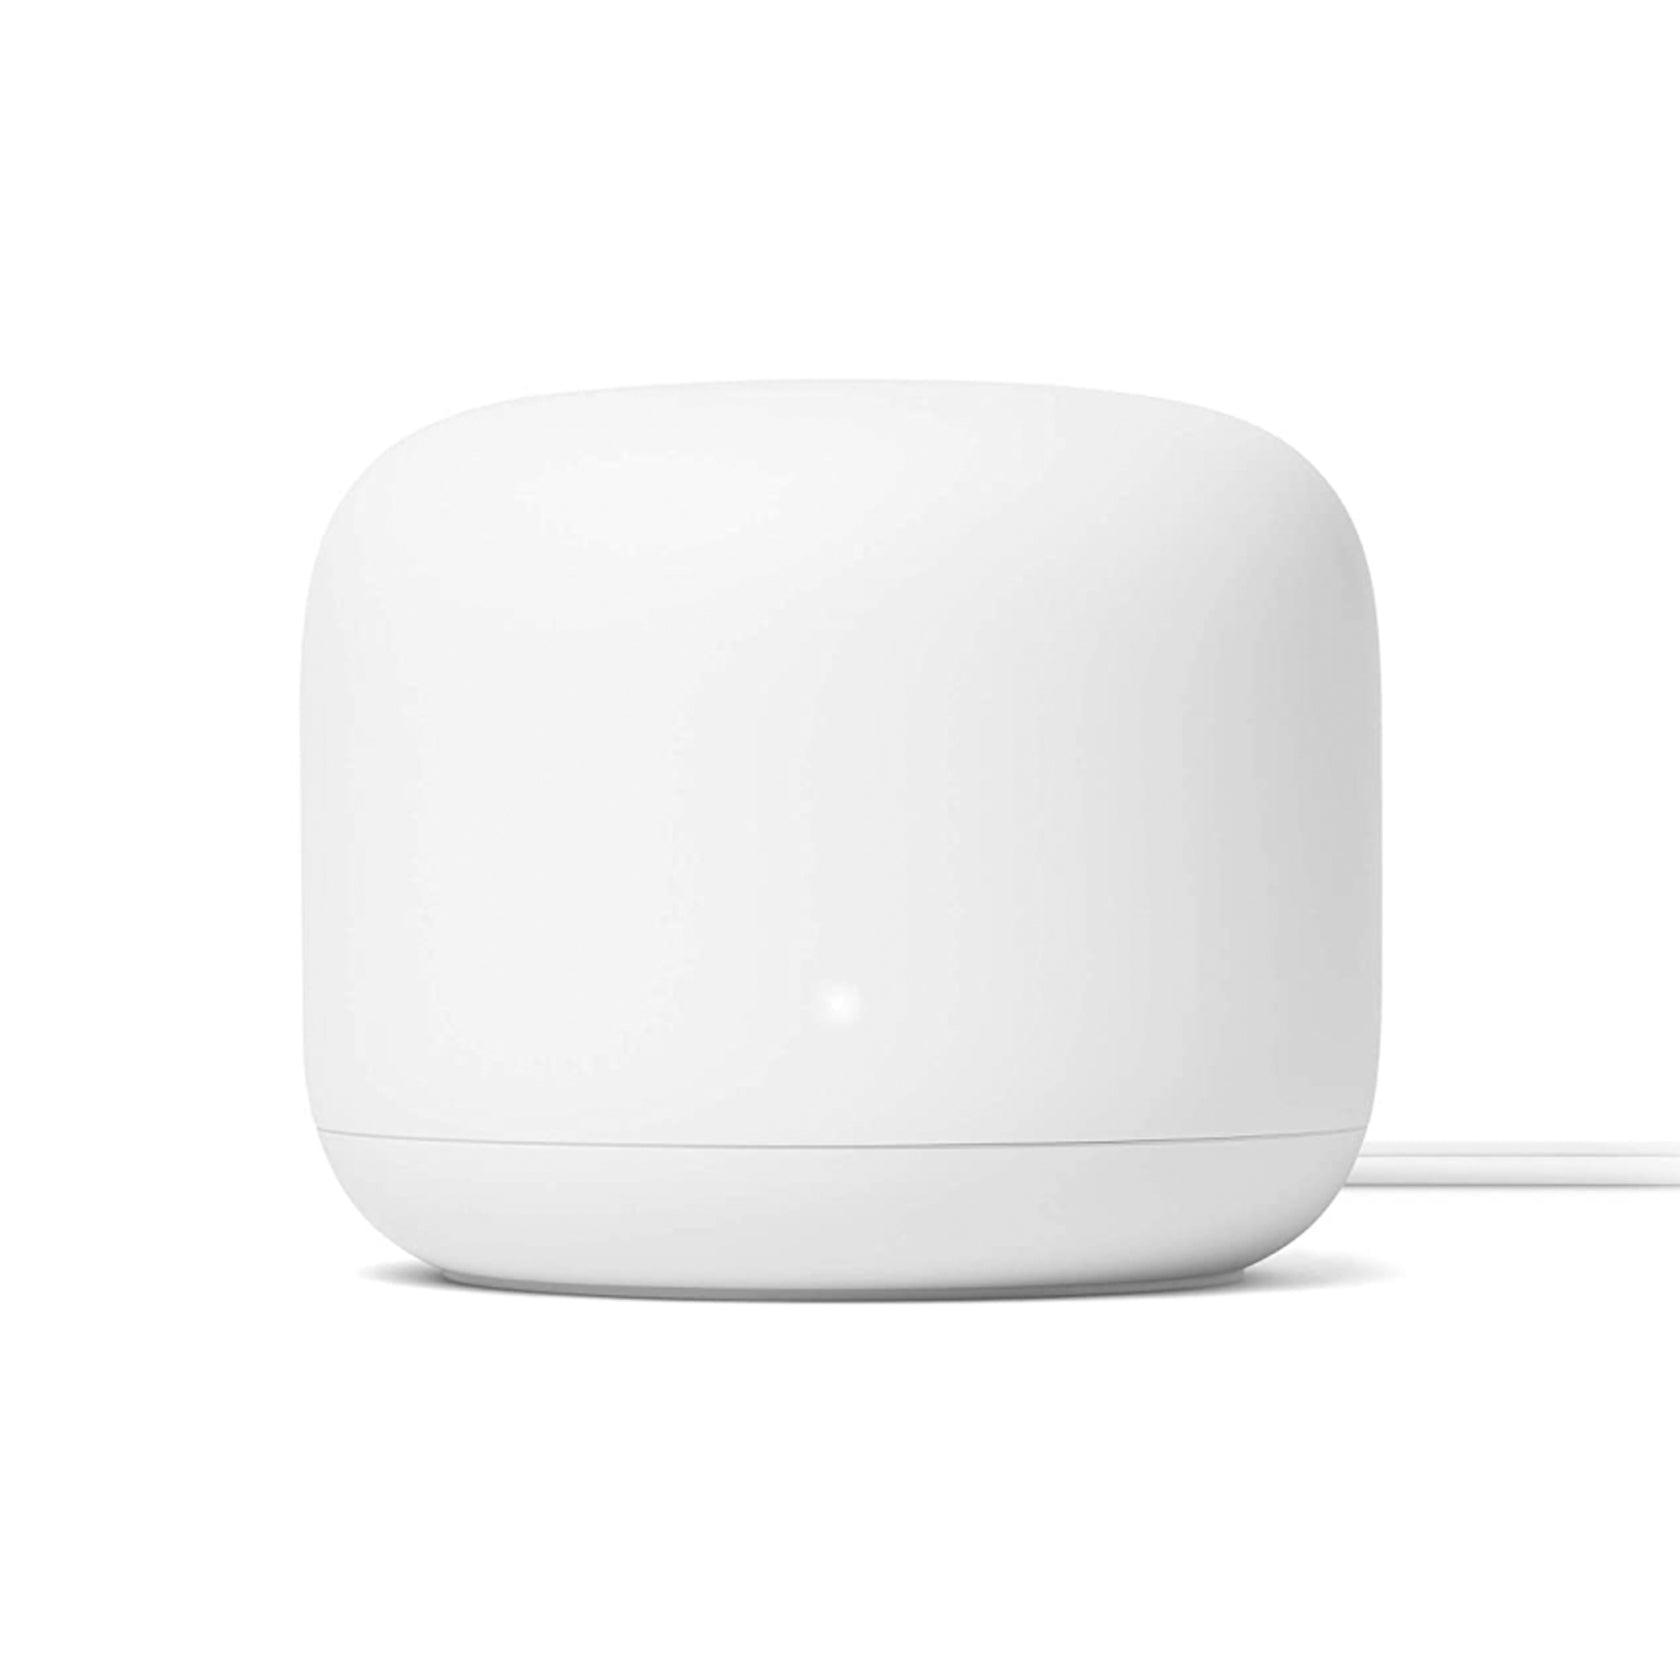 Google Nest Wifi Wi-Fi Router - Kosmos Renew